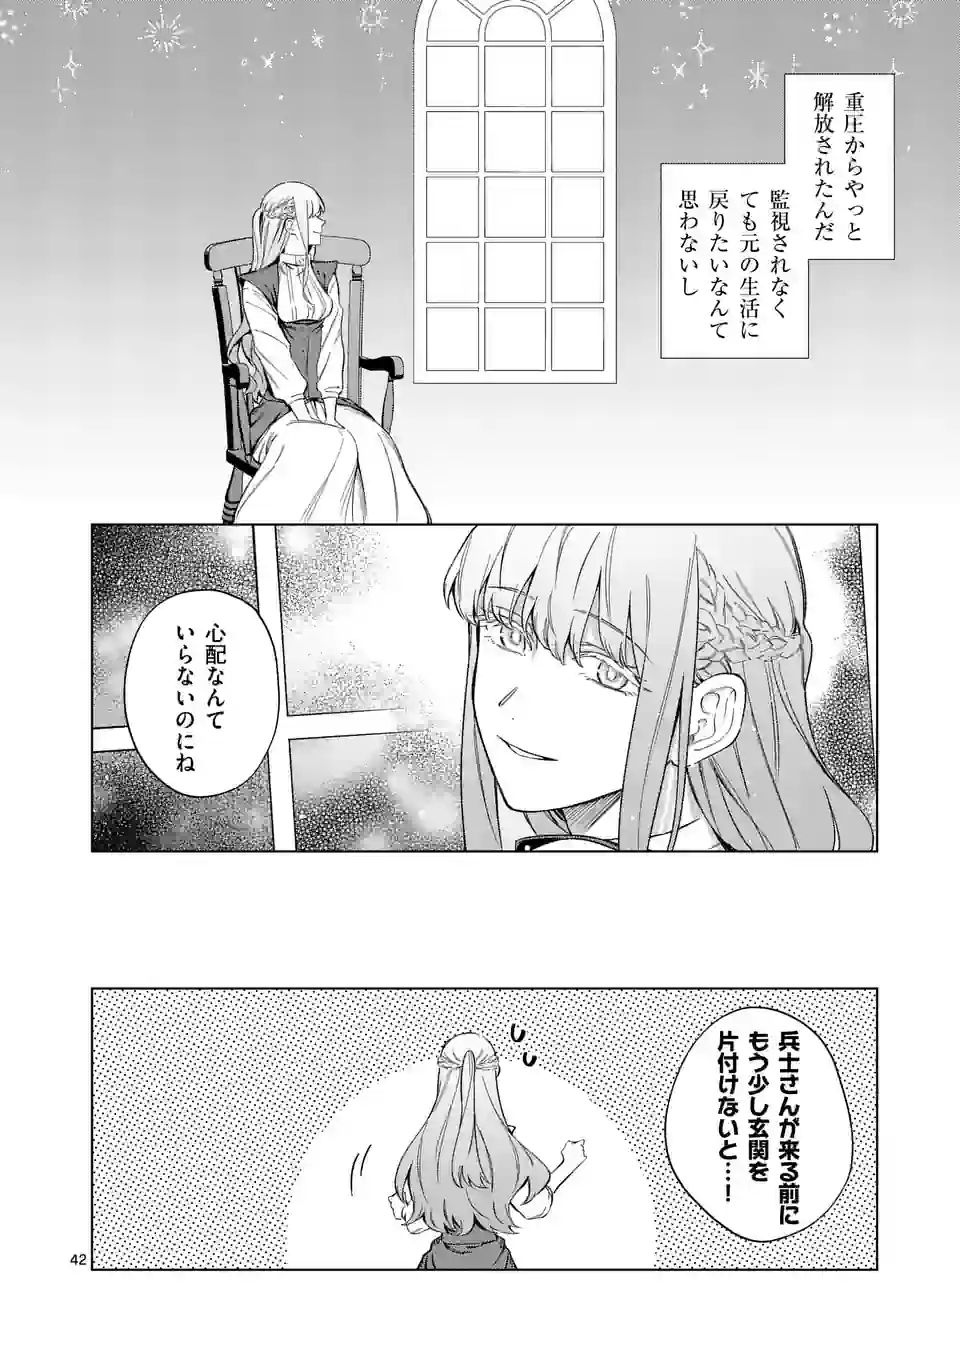 Mou Kyoumi ga Nai to Rikonsareta Reijou no Igai to Tanoshii Shinseikatsu - Chapter 2.5 - Page 19